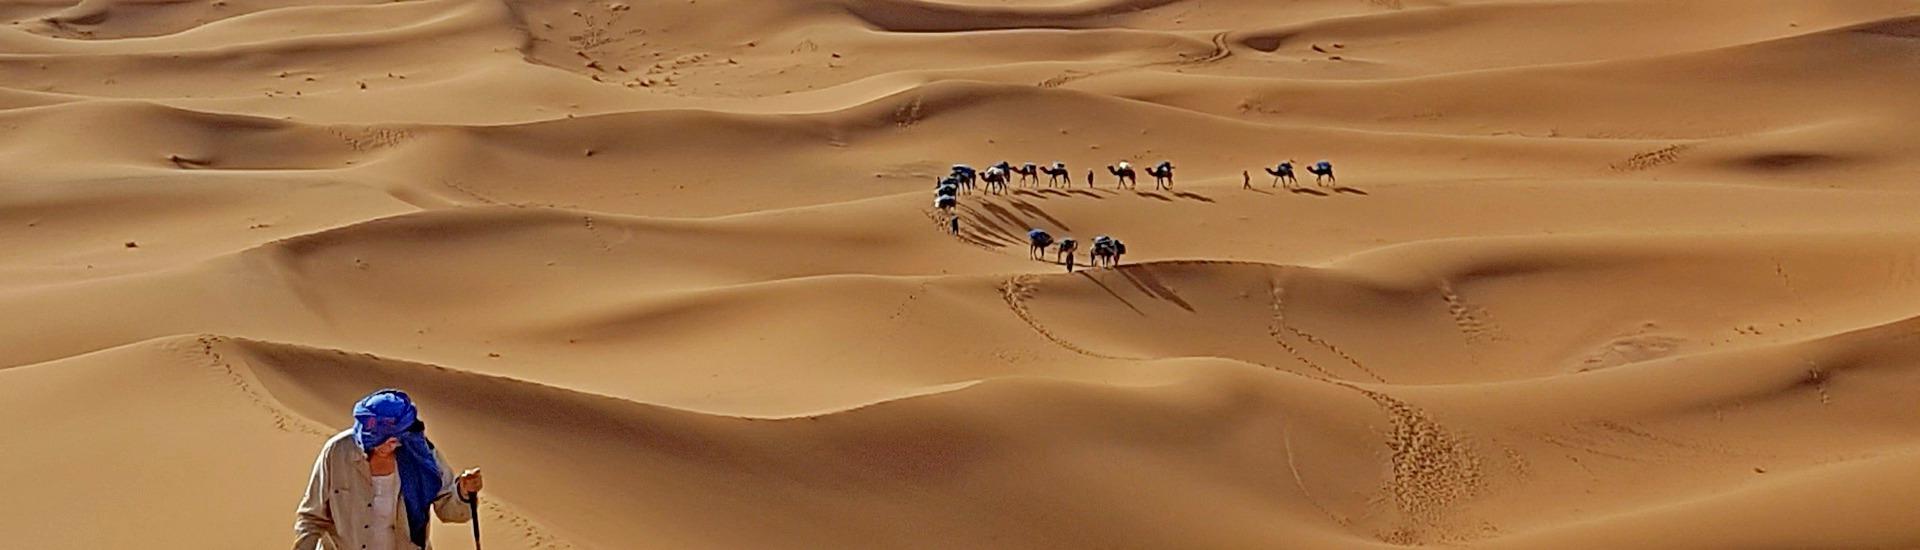 Maroko - gwiezdny pył Sahary